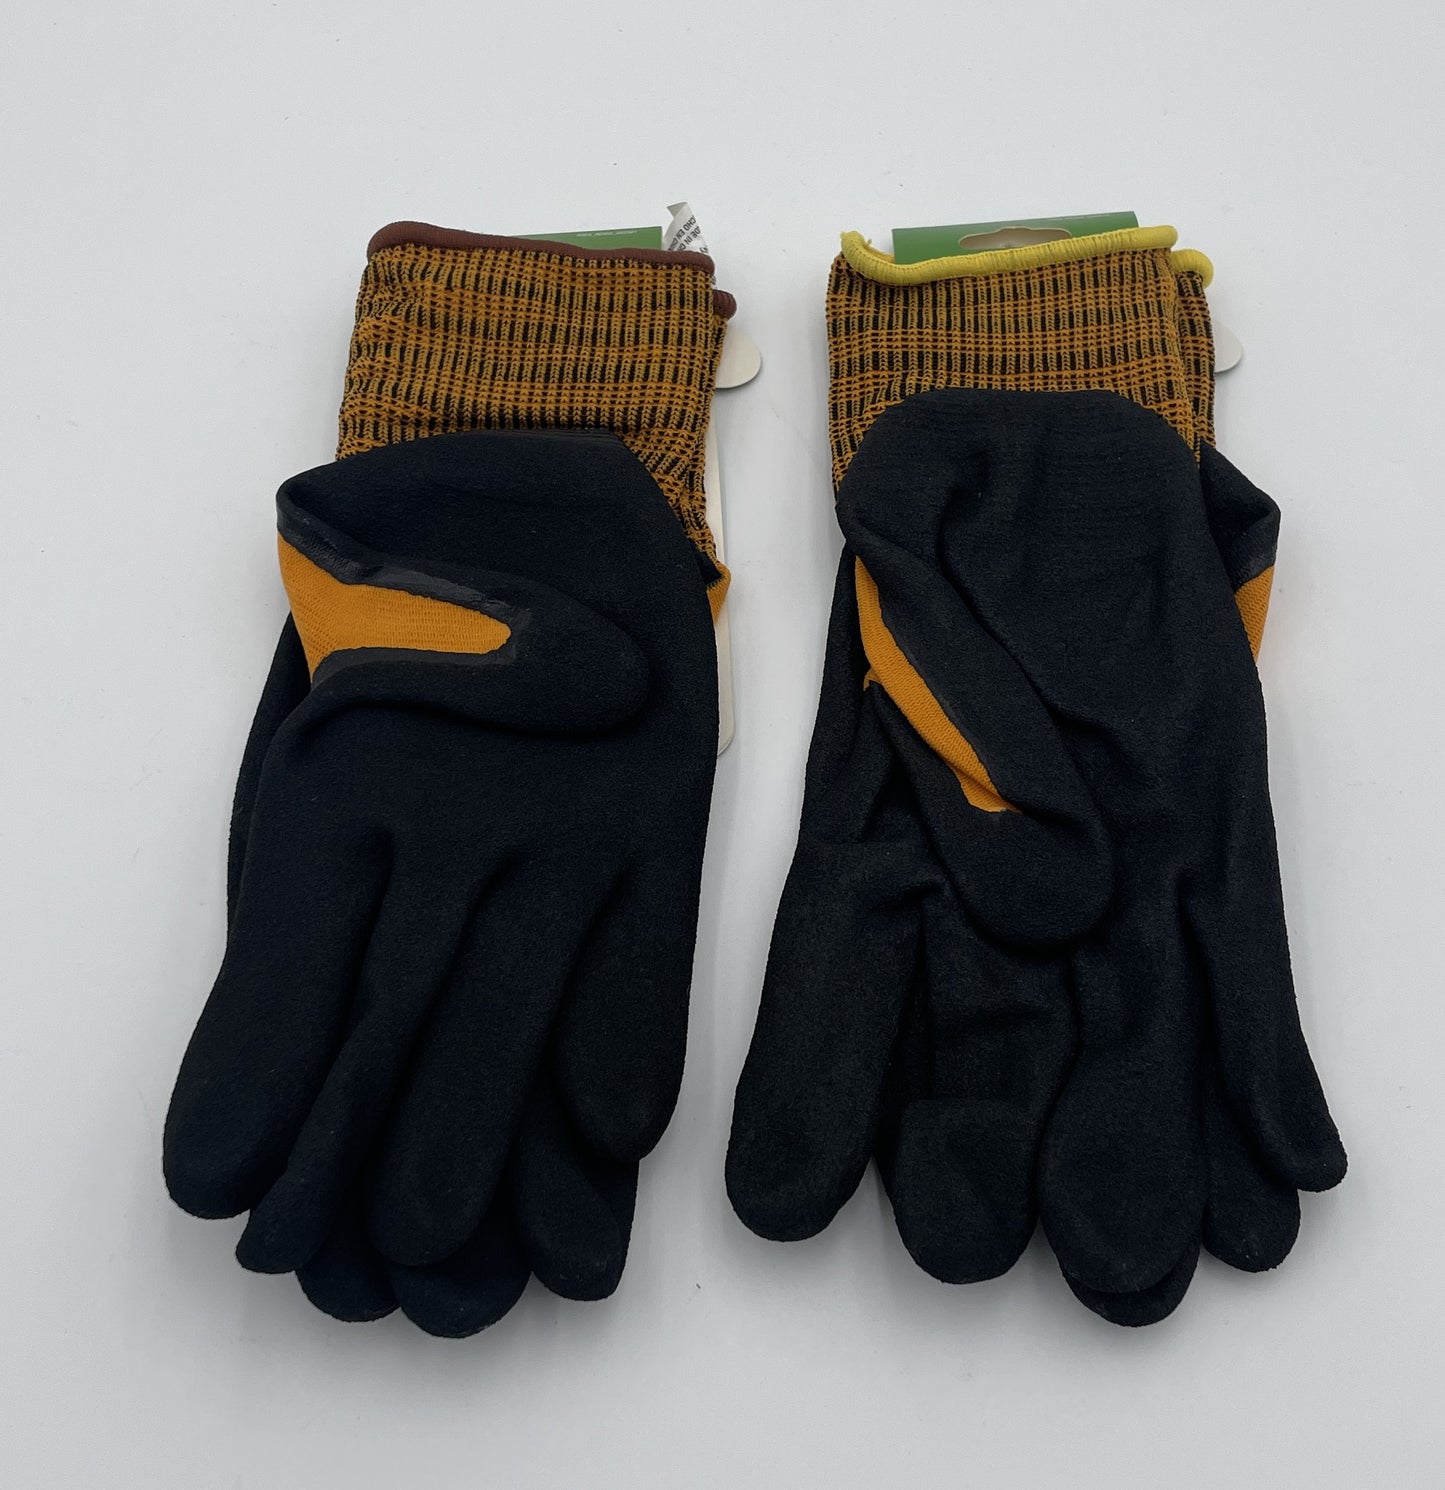 Gloves, Gardenware High-Durability Work Gloves